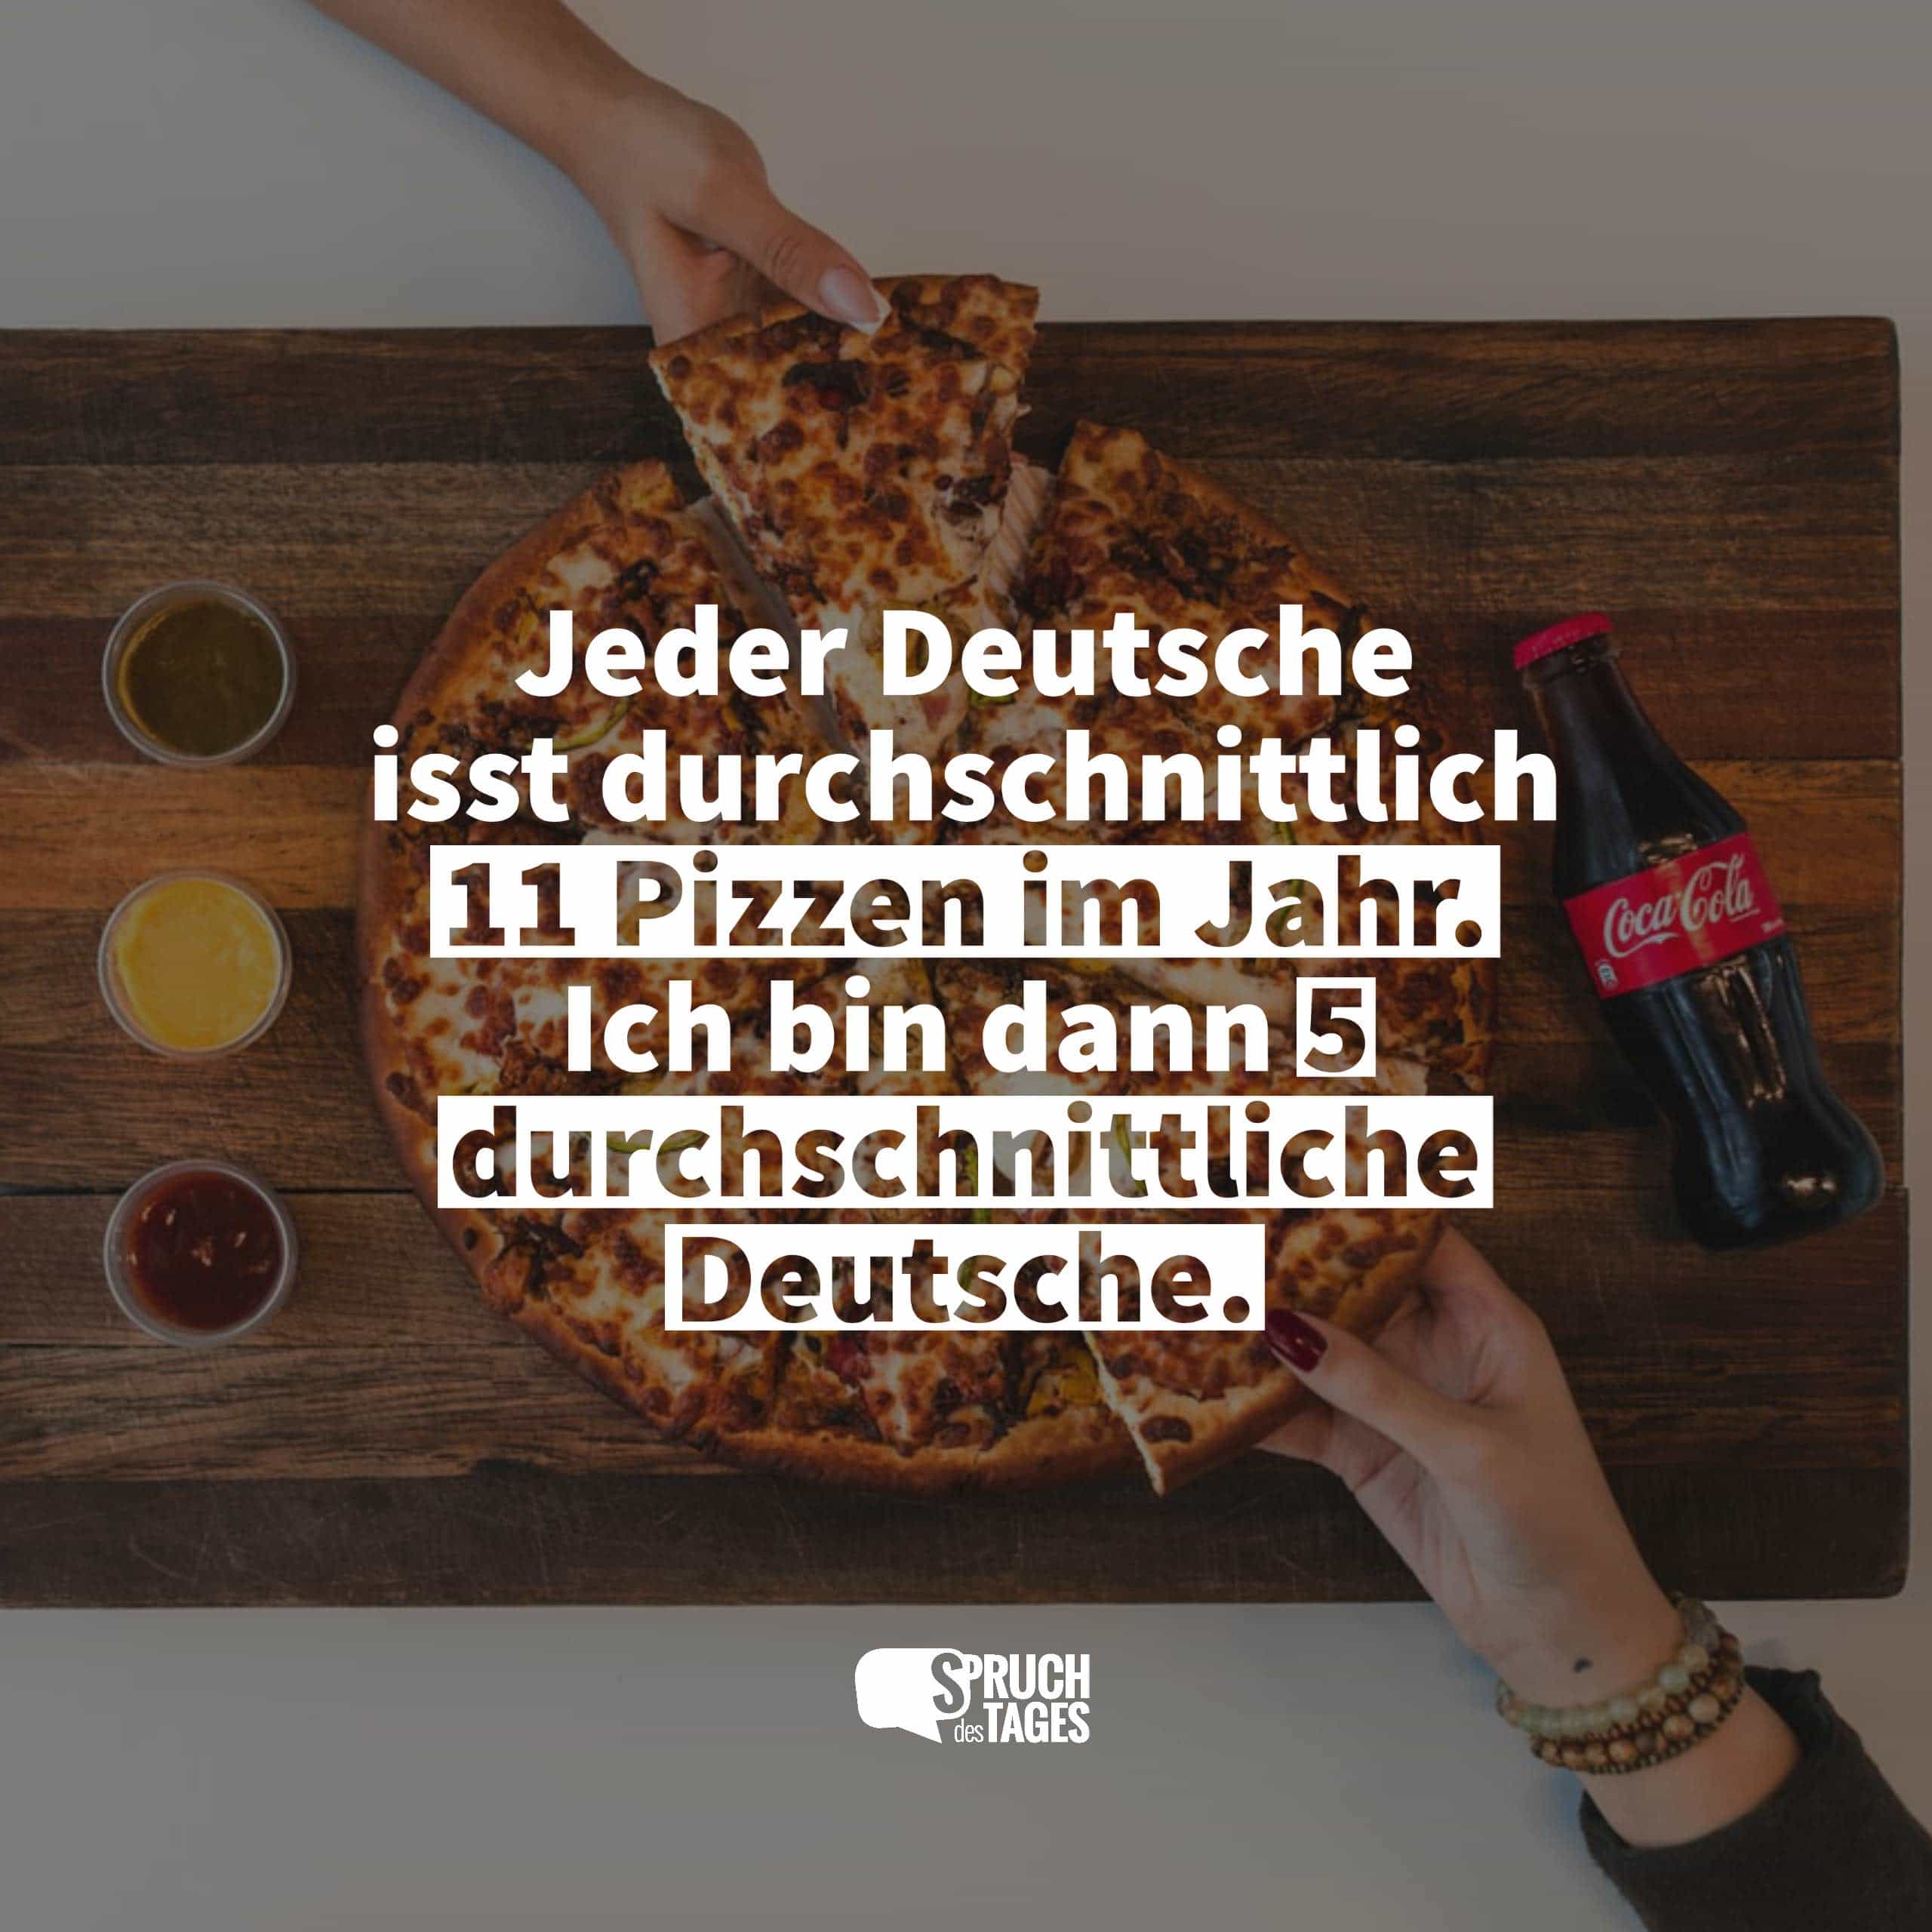 Jeder Deutsche isst durchschnittlich 11 Pizzen im Jahr. Ich bin dann 5 durchschnittliche Deutsche.